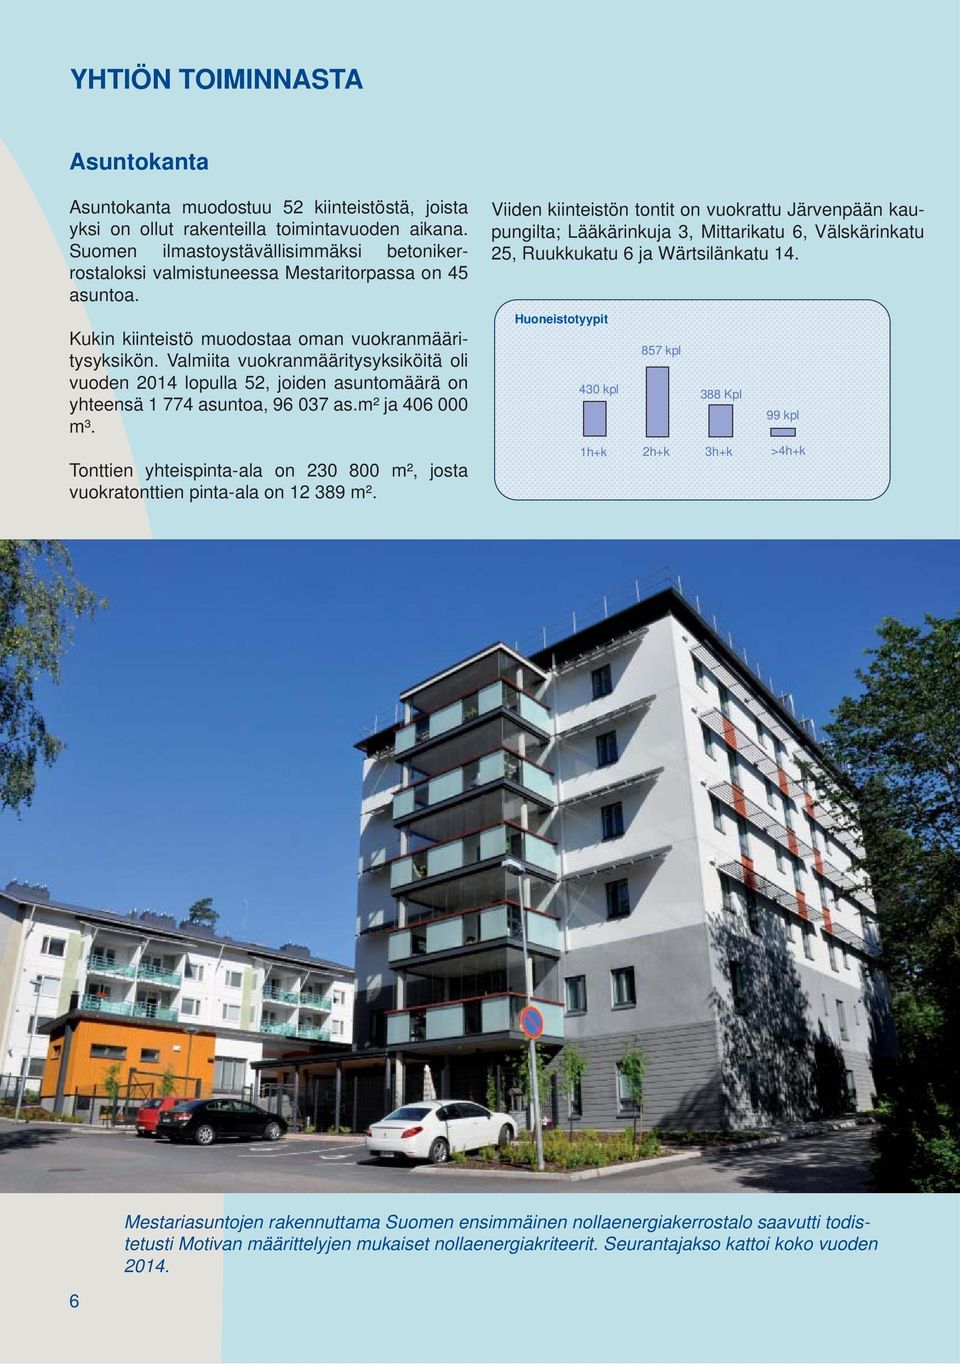 Valmiita vuokranmääritysyksiköitä oli vuoden 2014 lopulla 52, joiden asuntomäärä on yhteensä 1 774 asuntoa, 96 037 as.m² ja 406 000 m³.